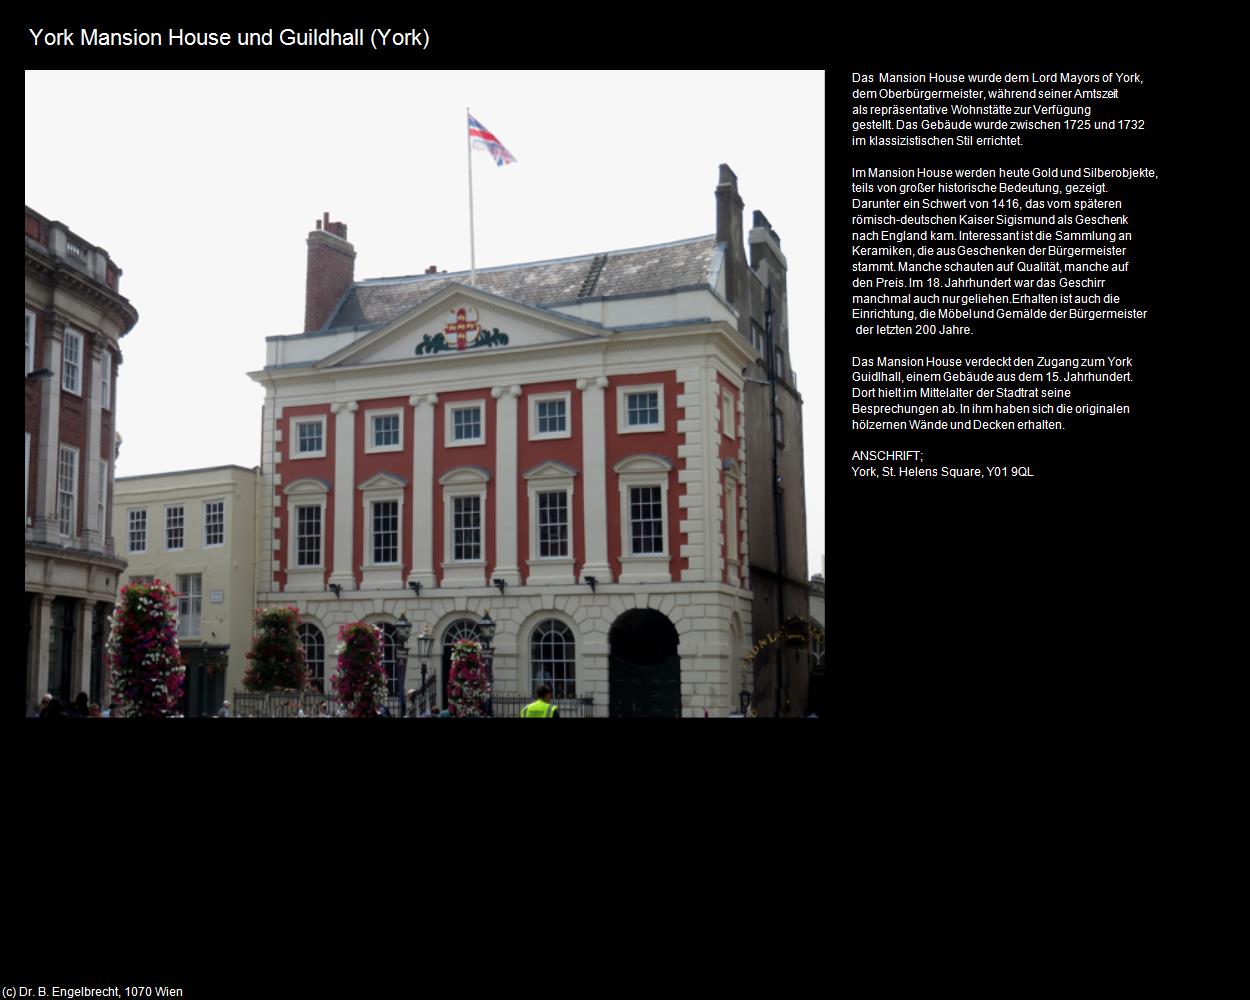 York Mansion House und Guildhall (York, England) in Kulturatlas-ENGLAND und WALES